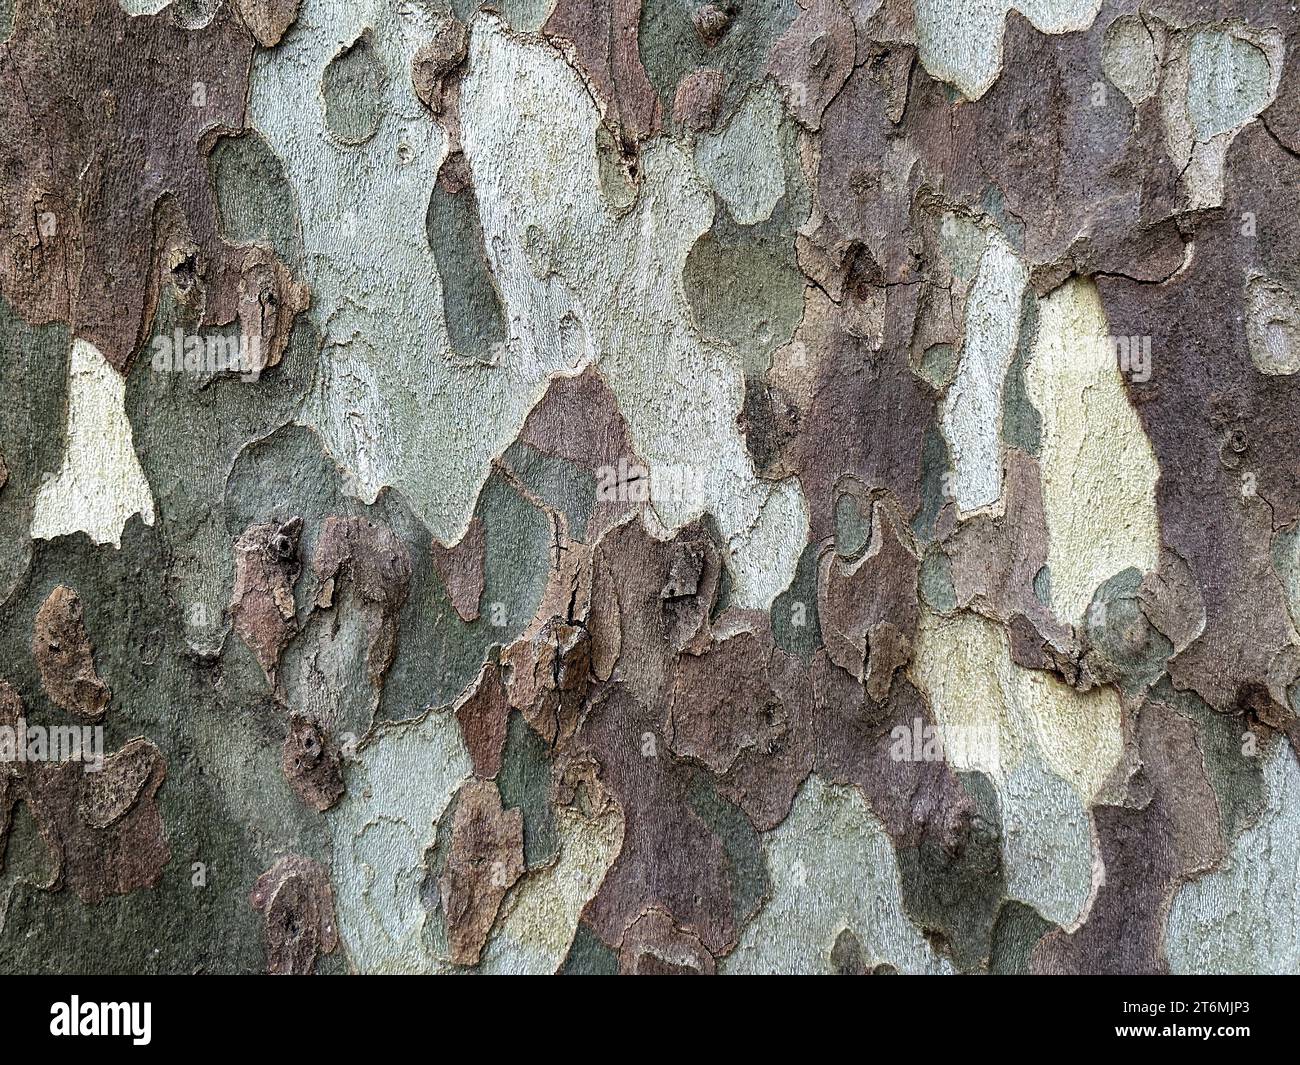 Textura detallada de corteza de árbol de sicómoro marrón y gris. Superficie manchada del tronco. Fondos abstractos de la naturaleza Foto de stock